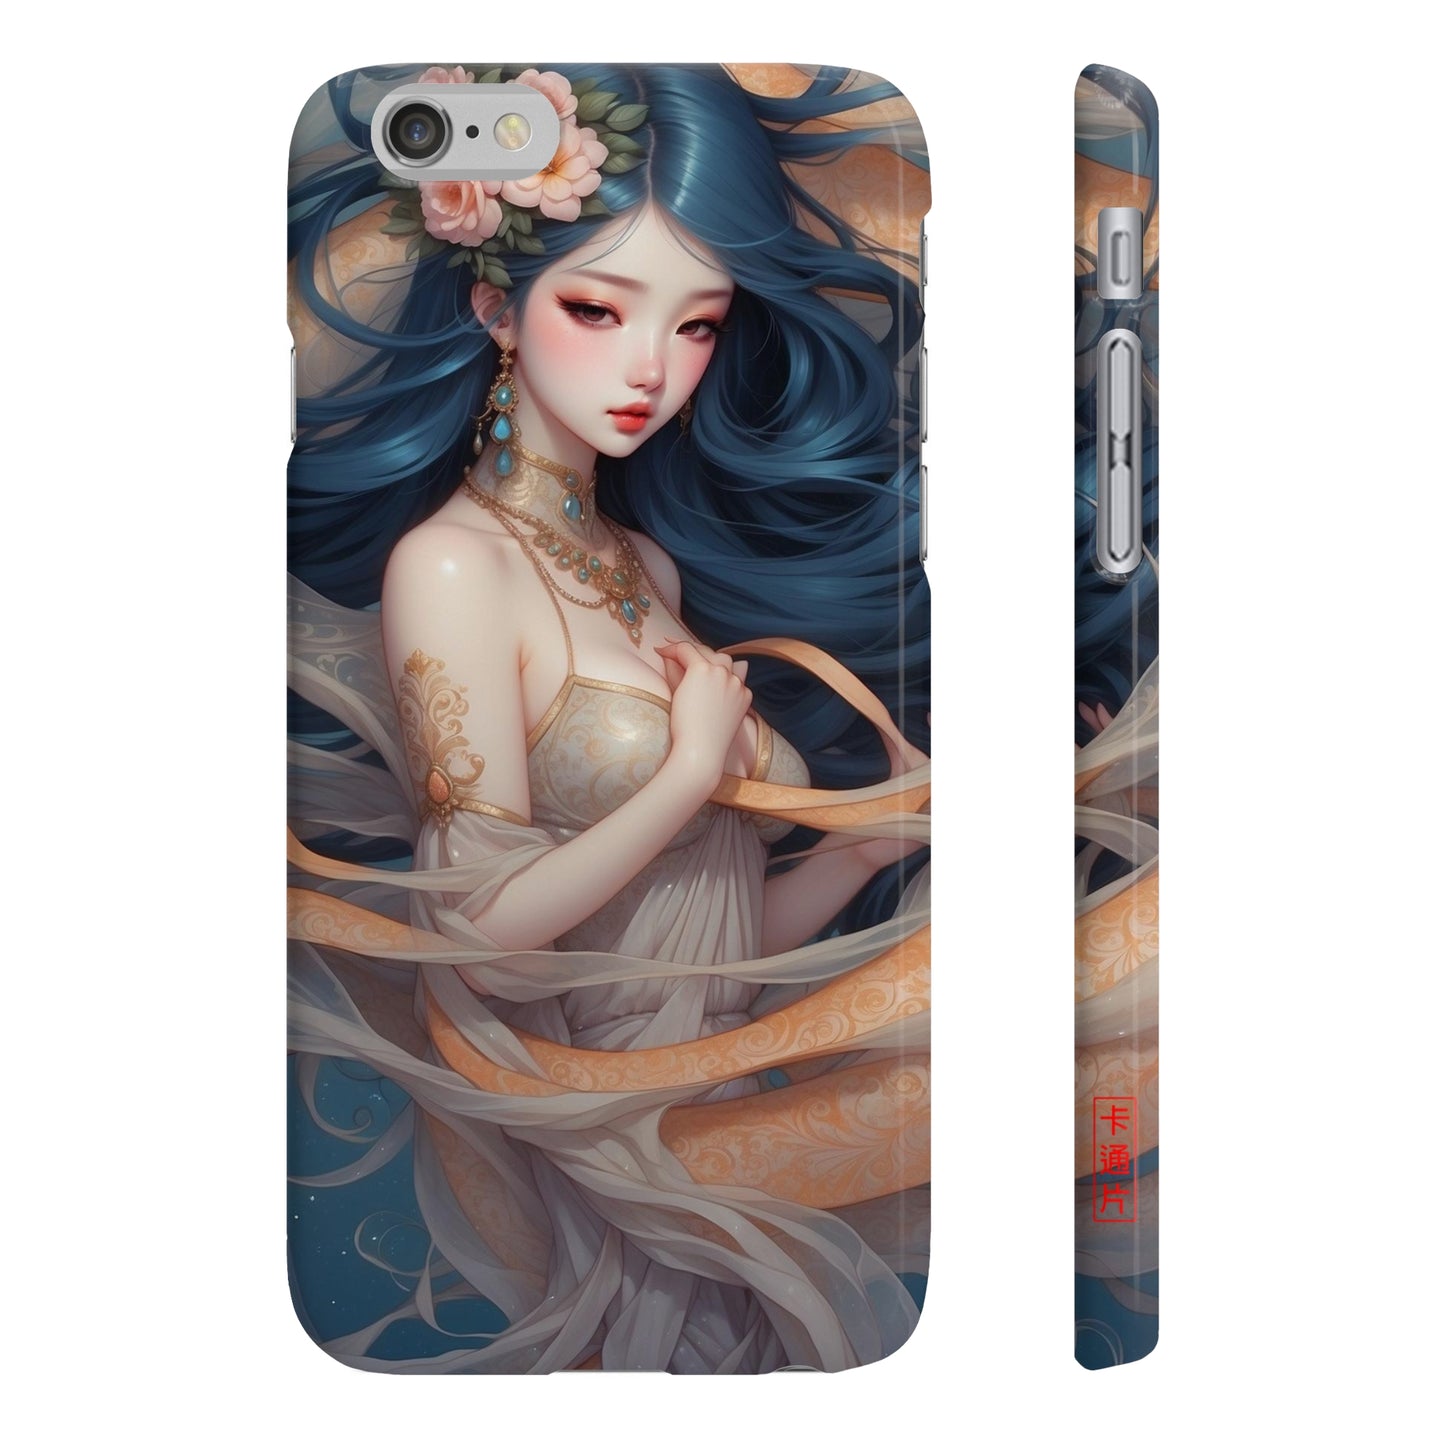 Kǎtōng Piàn - Mermaid Collection - 053 - Slim Phone Cases Printify